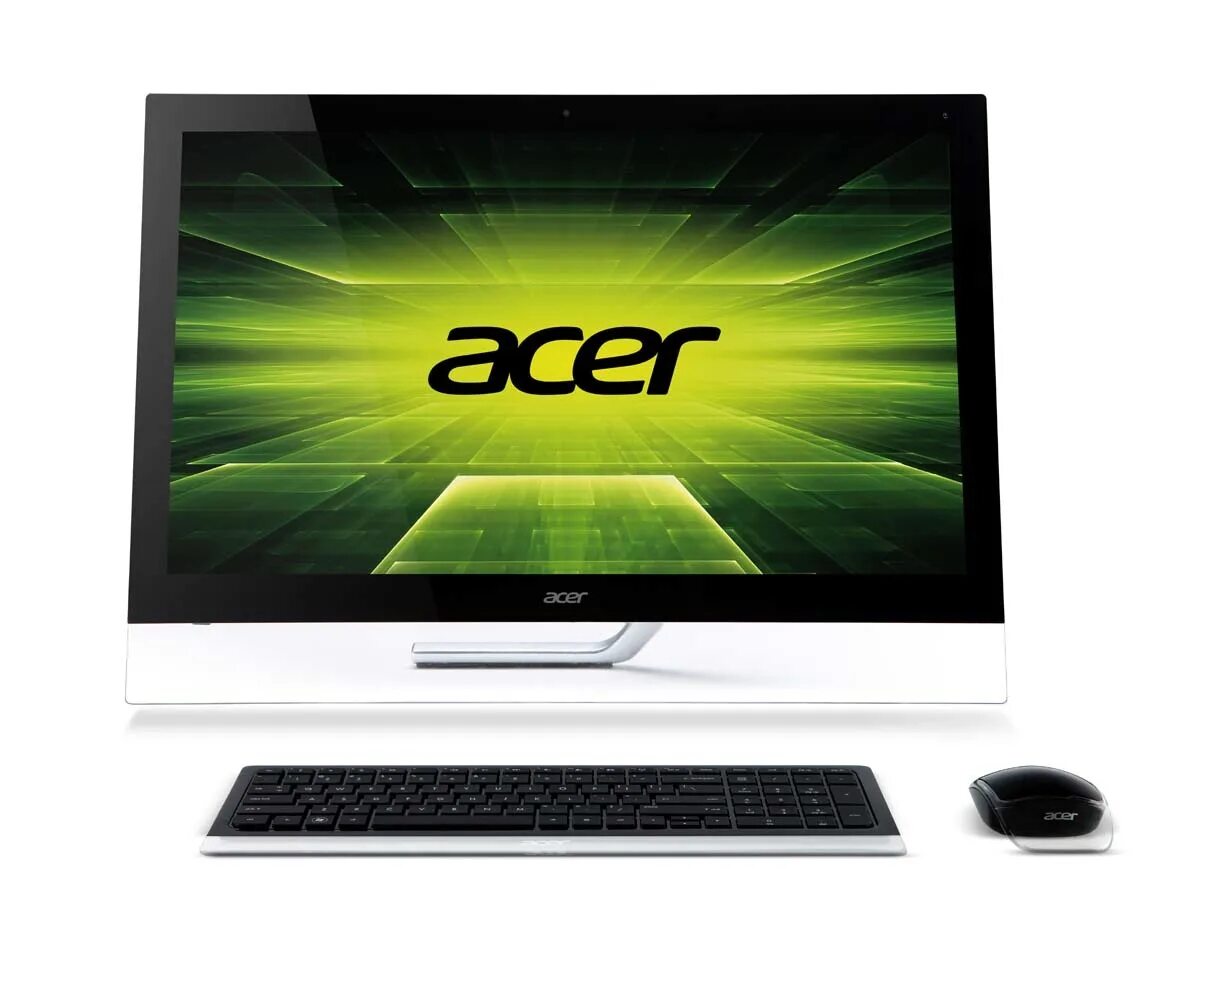 Acer Aspire 7600u. Acer 7600u (dqsl6er008). Моноблок 23 Acer Aspire 5600u. Моноблок 27" Acer Aspire z7600u.